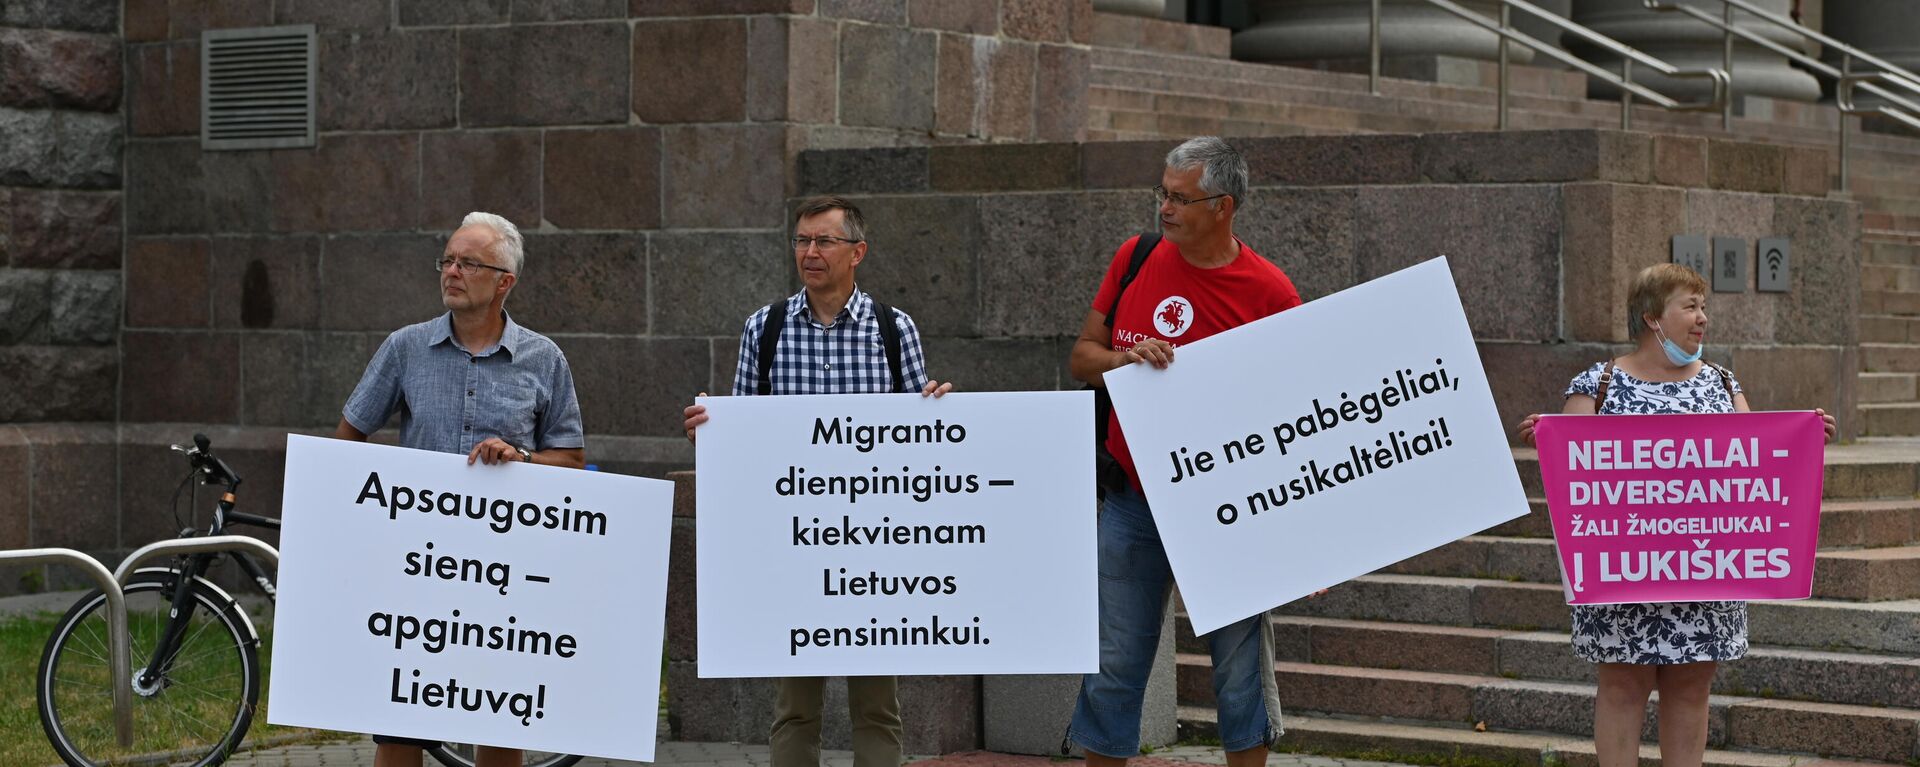 Митинг у здания Сейма Литвы в Вильнюсе против нелегальных мигрантов - Sputnik Литва, 1920, 14.07.2021